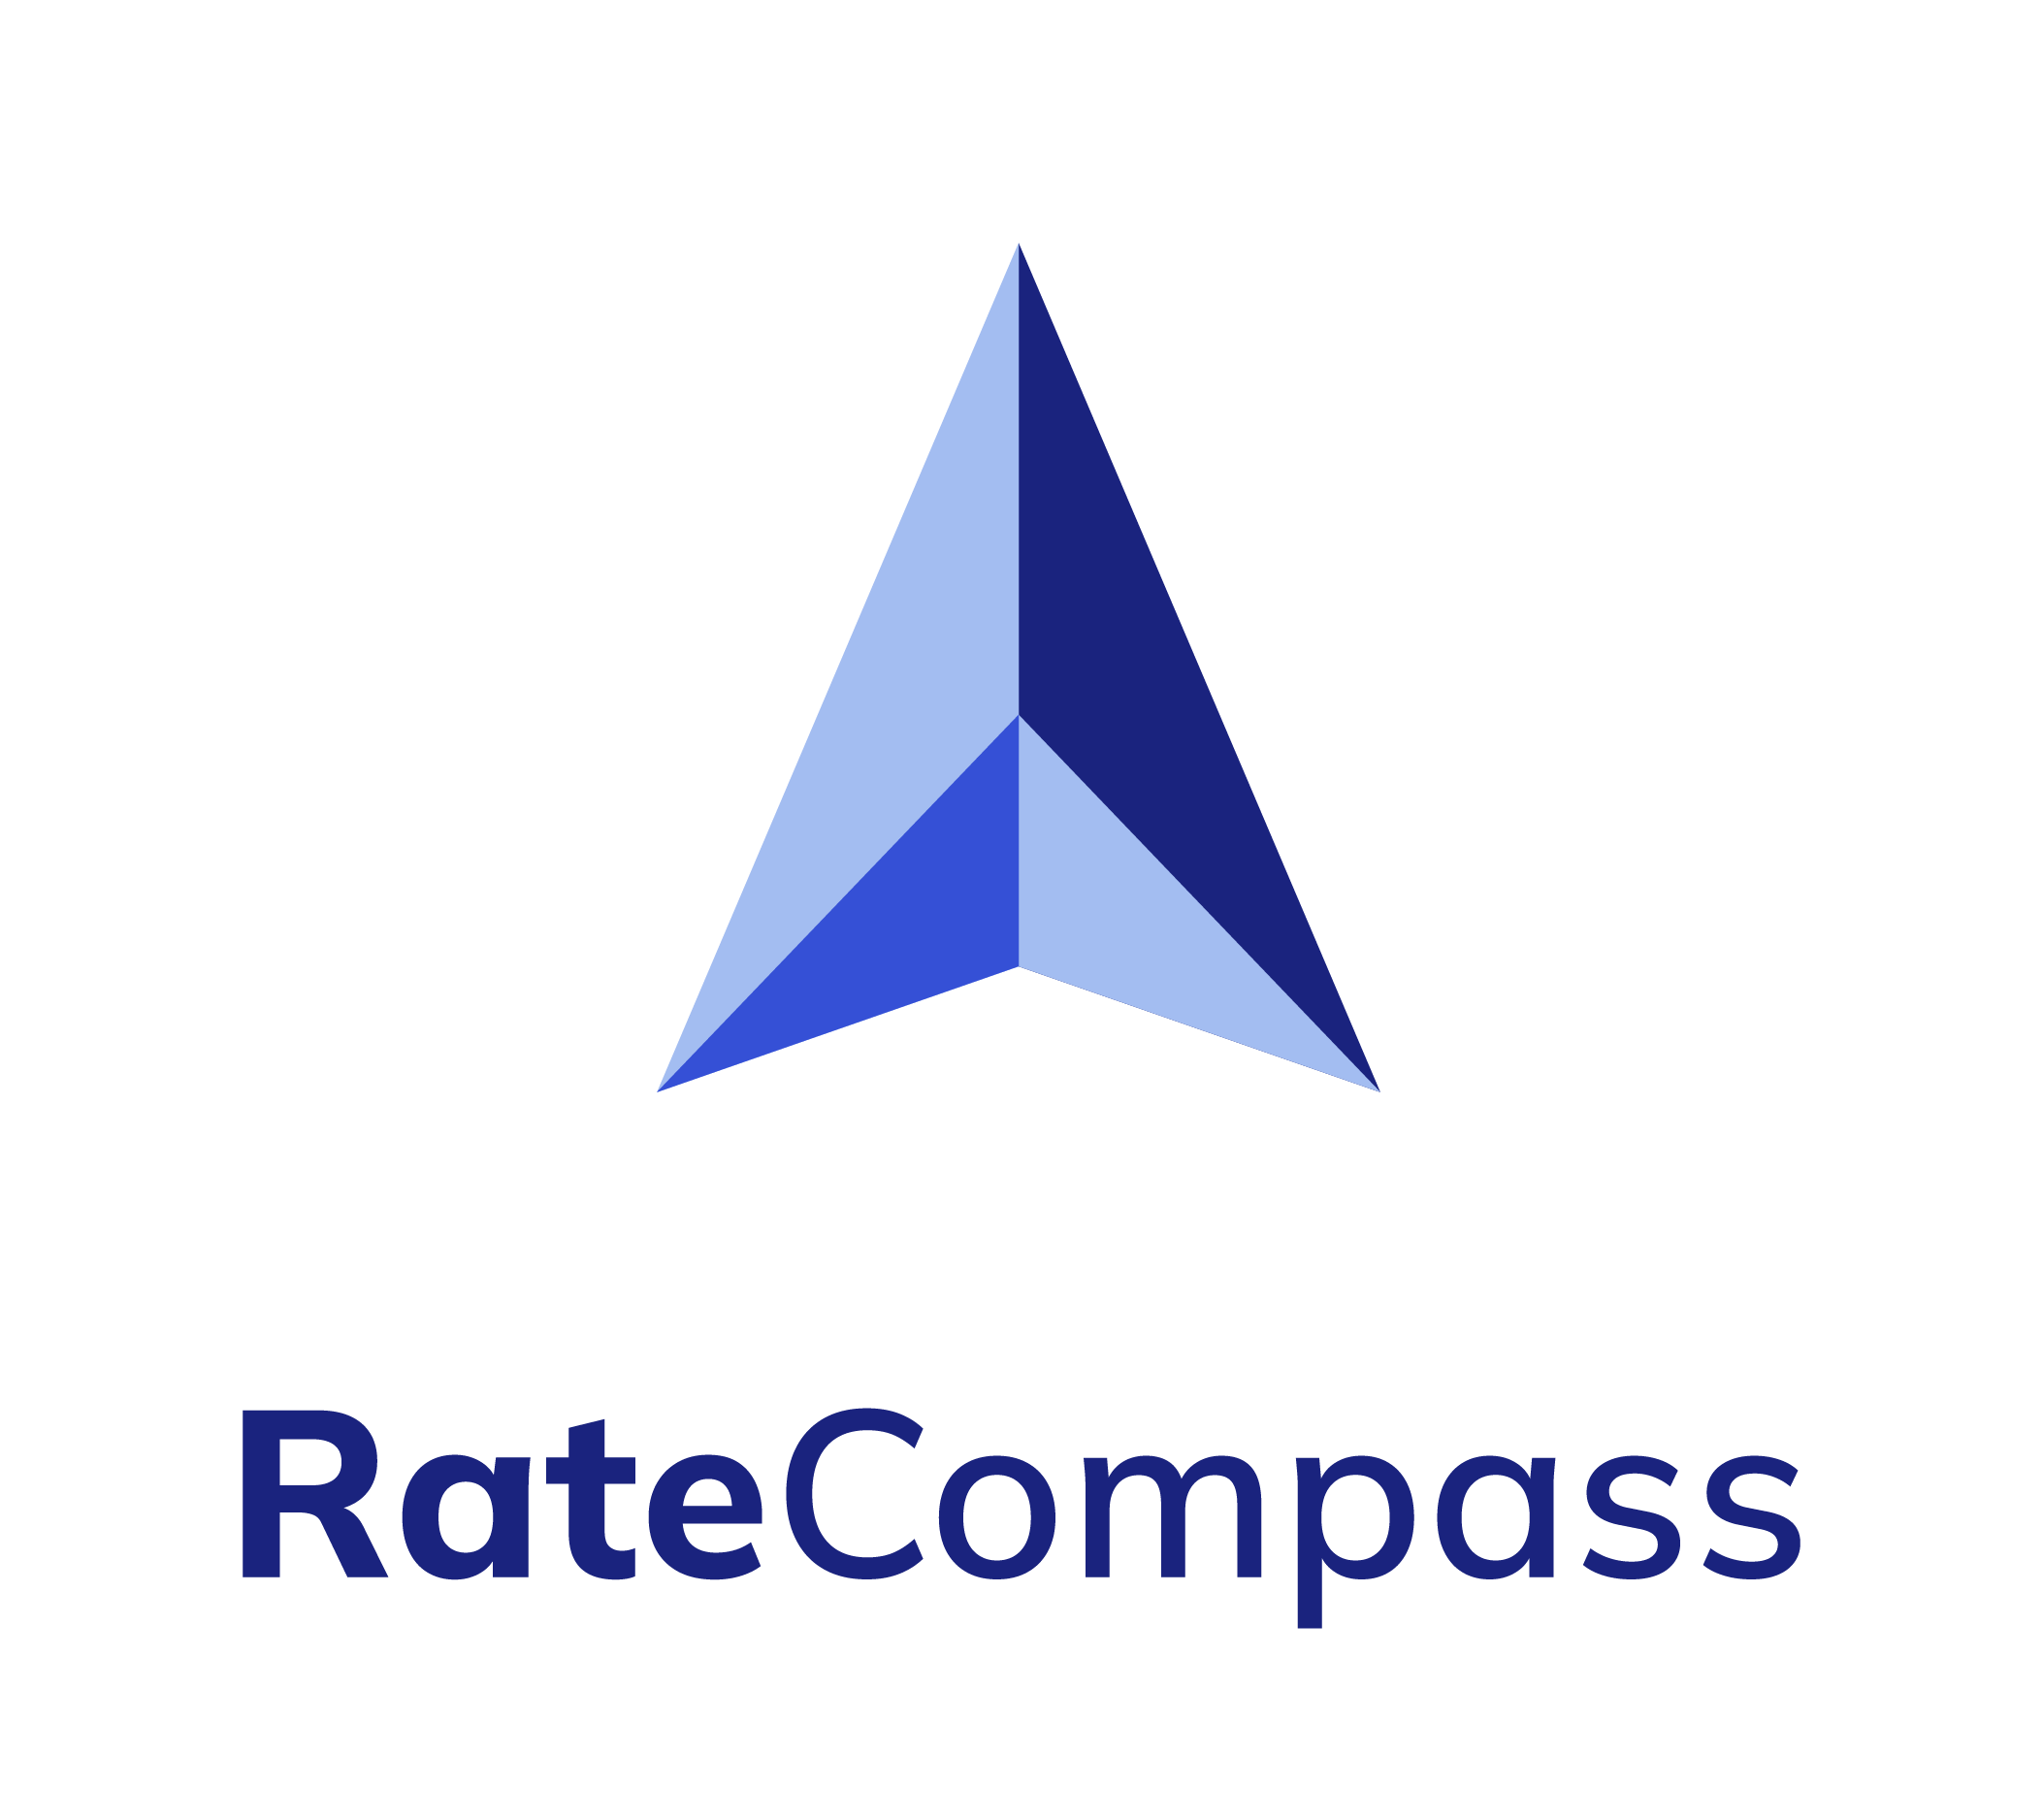 RateCompass__Tunnus ja logo_MAIN